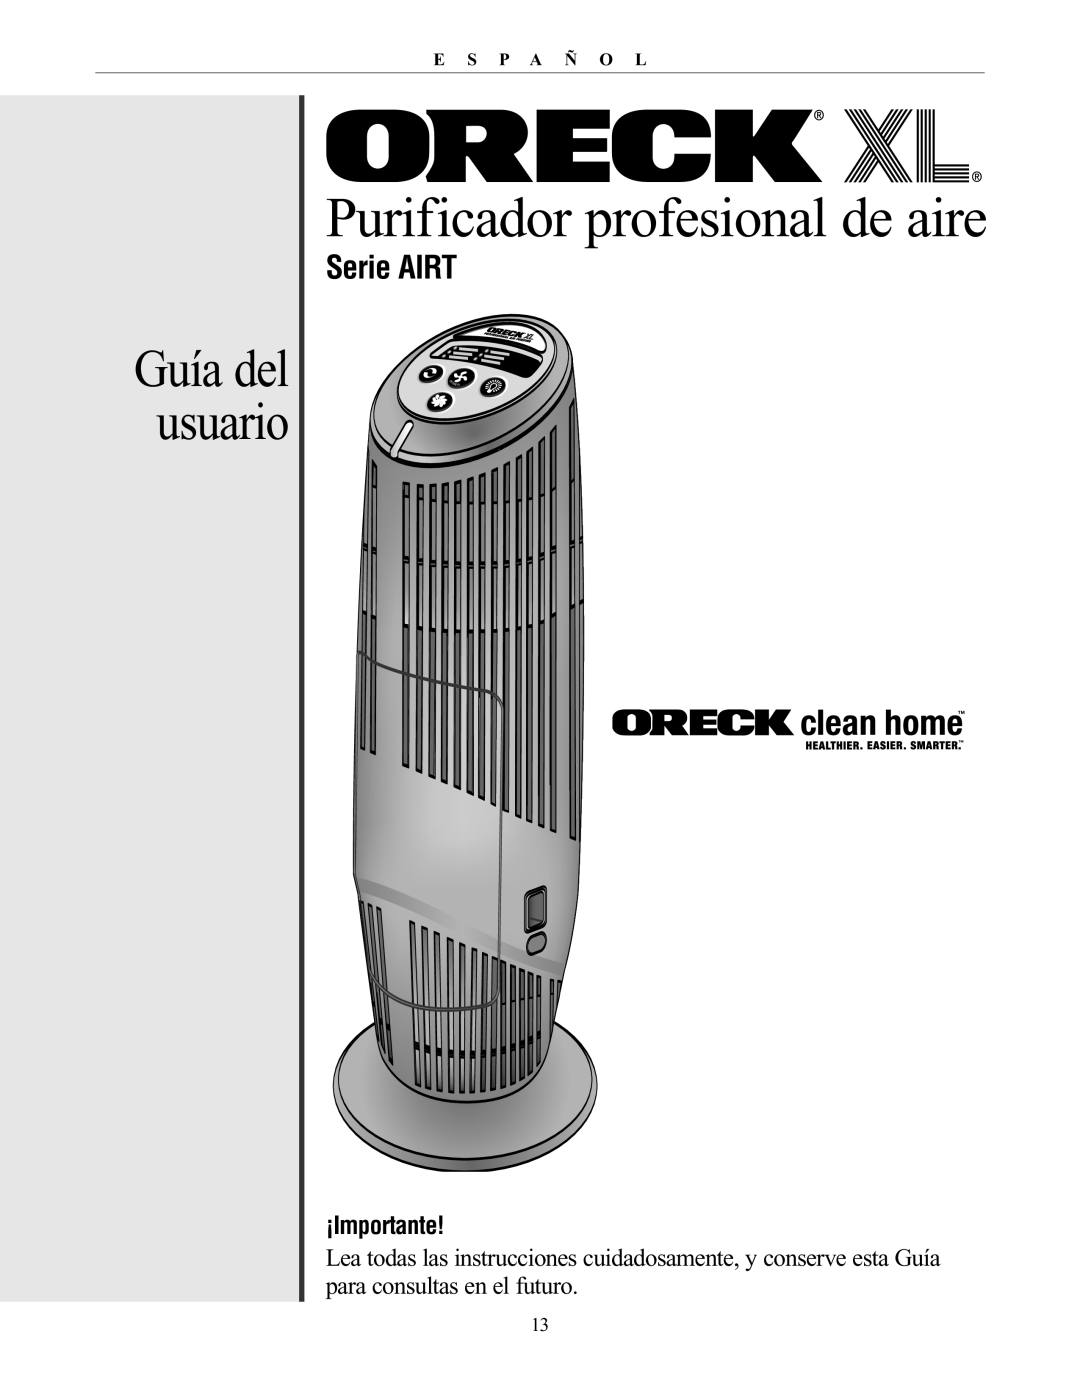 Oreck 20061-01Rev.A manual Guía del usuario, Serie AIRT, ¡Importante, Purificador profesional de aire, E S P A Ñ O L, Owe R 